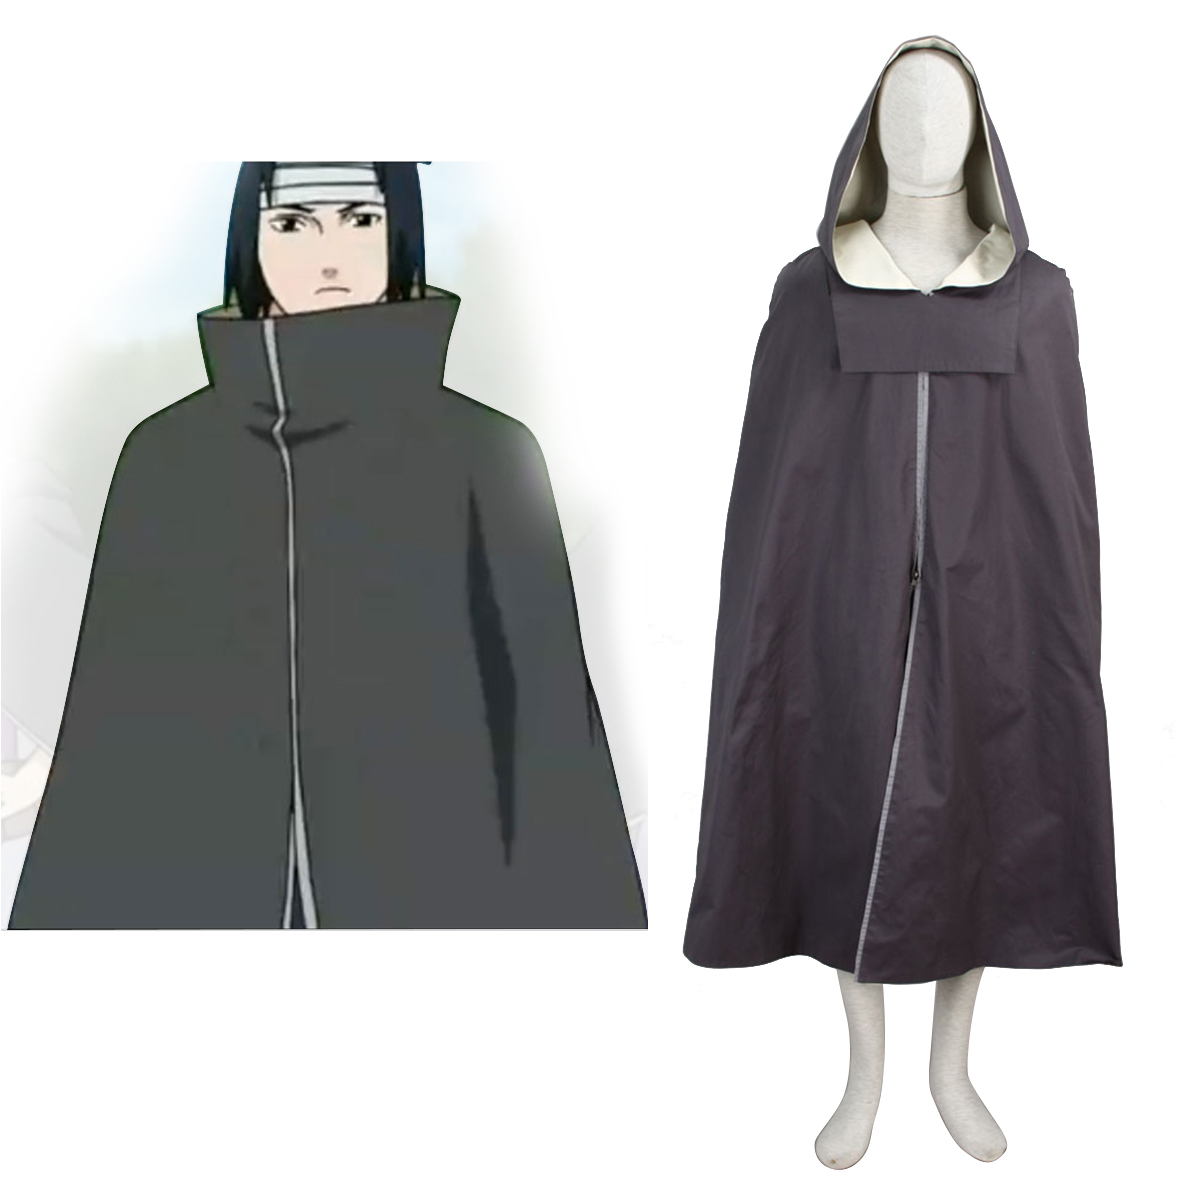 Disfraces Naruto Taka Organization Cloak 1 Cosplay España Tiendas